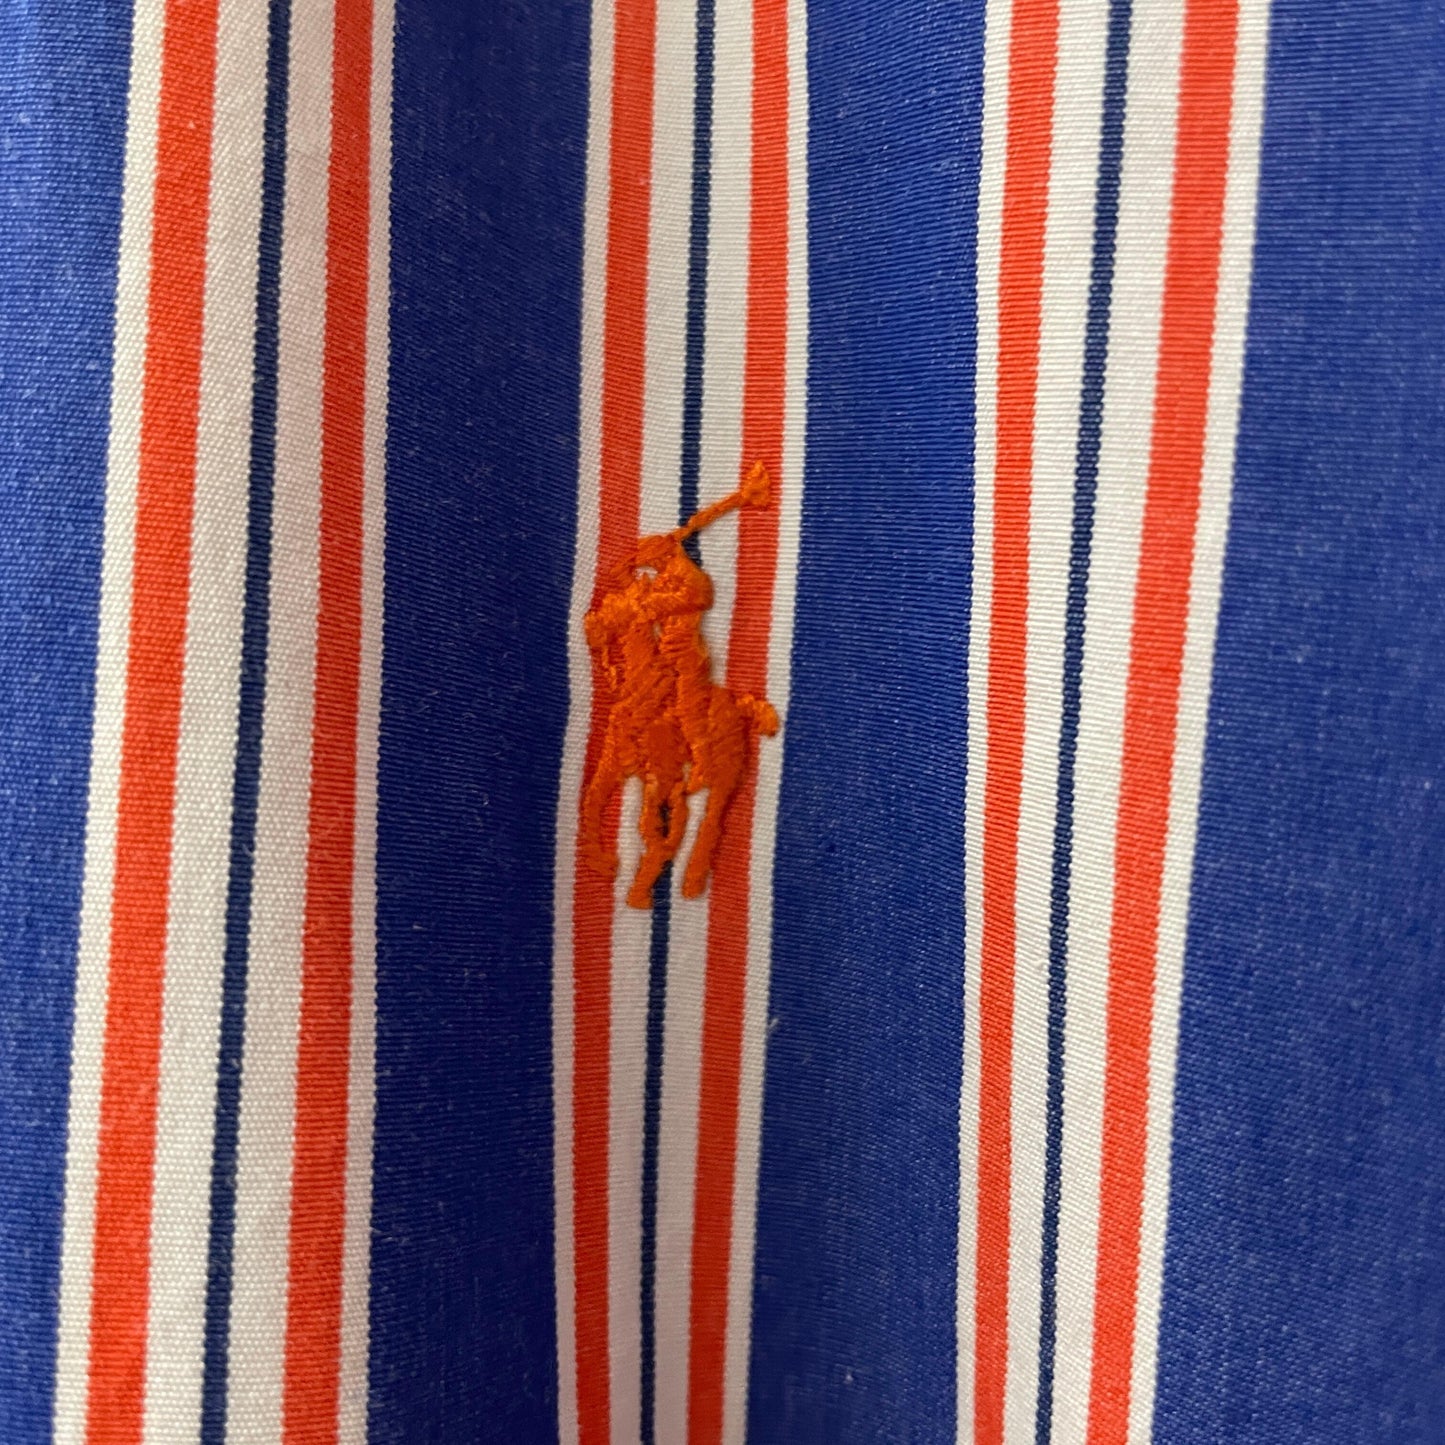 Ralph Lauren classic Fit striped shirt shirt BD shirt button down